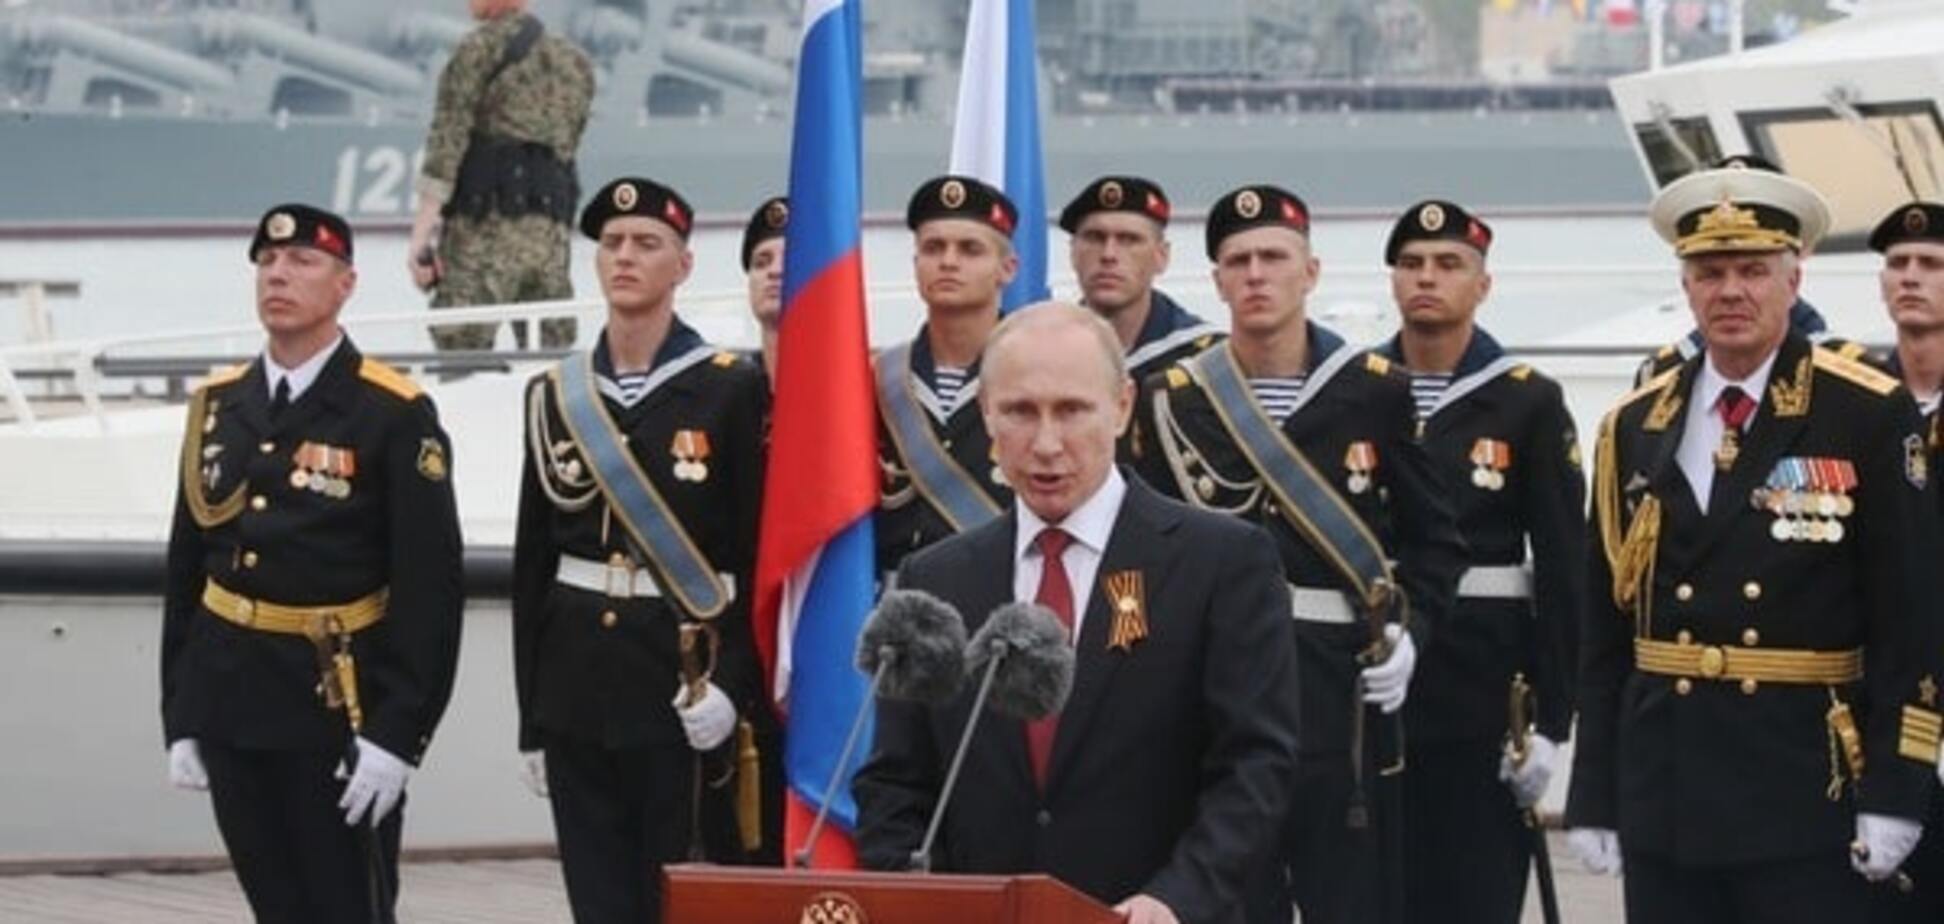 Бастіон - Крим: півострів може стати пасткою для великого угруповання Путіна